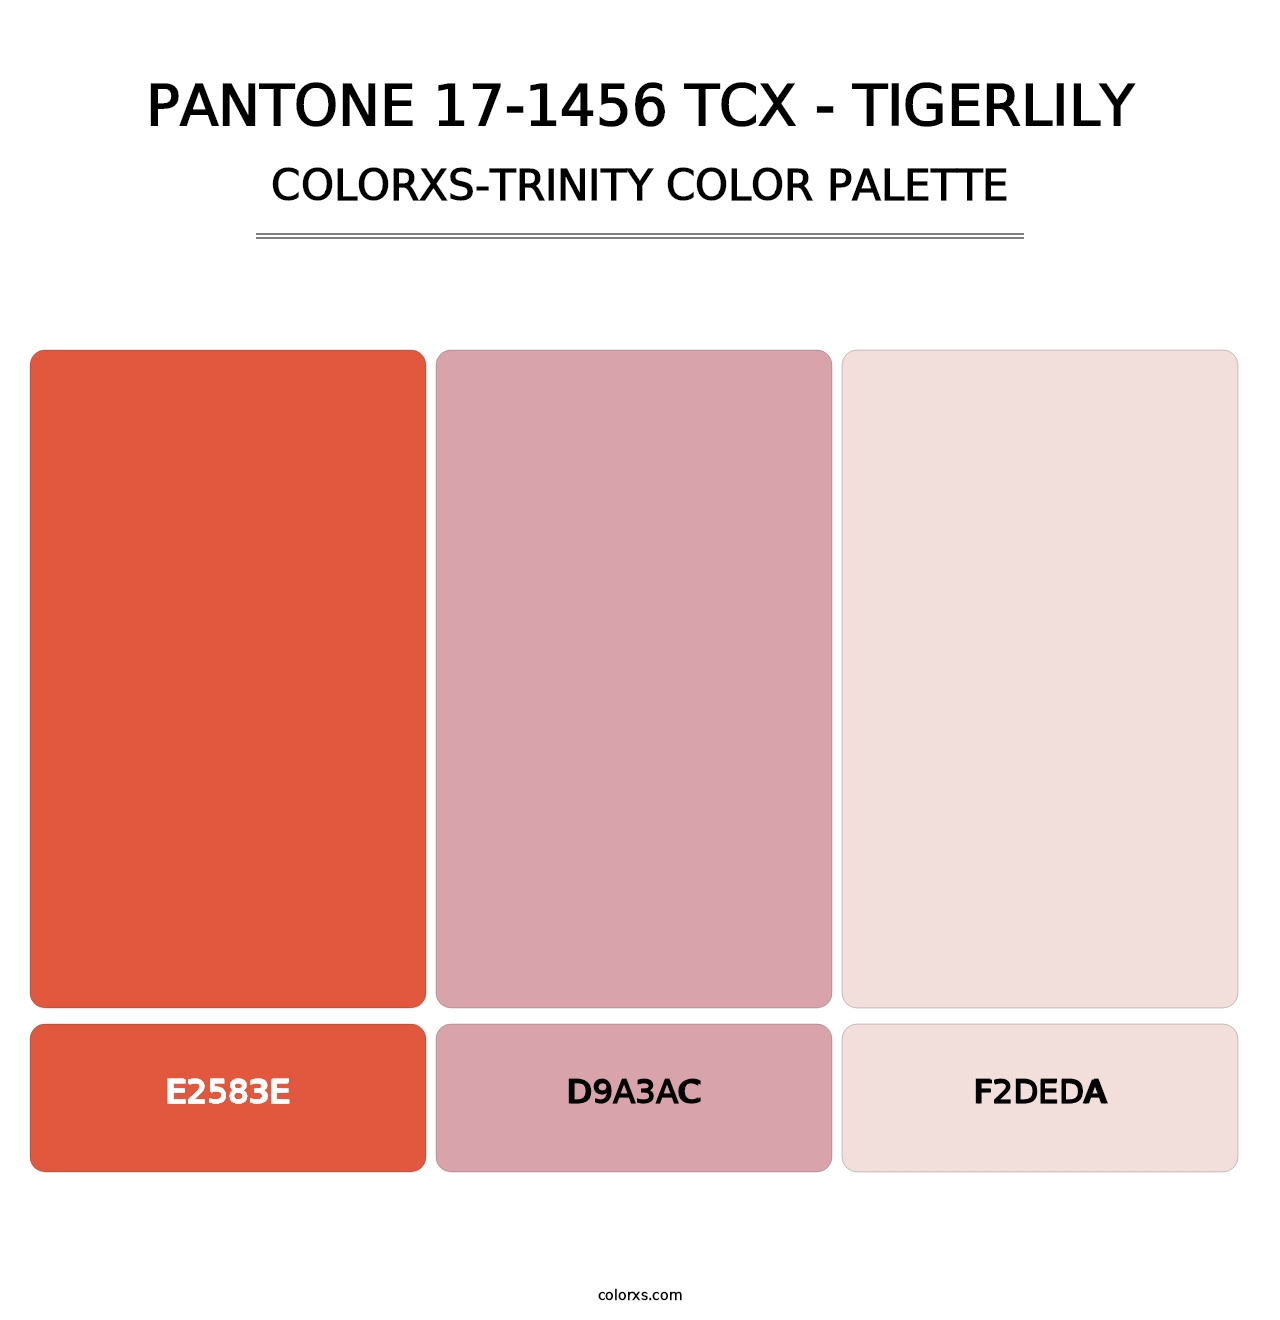 PANTONE 17-1456 TCX - Tigerlily - Colorxs Trinity Palette